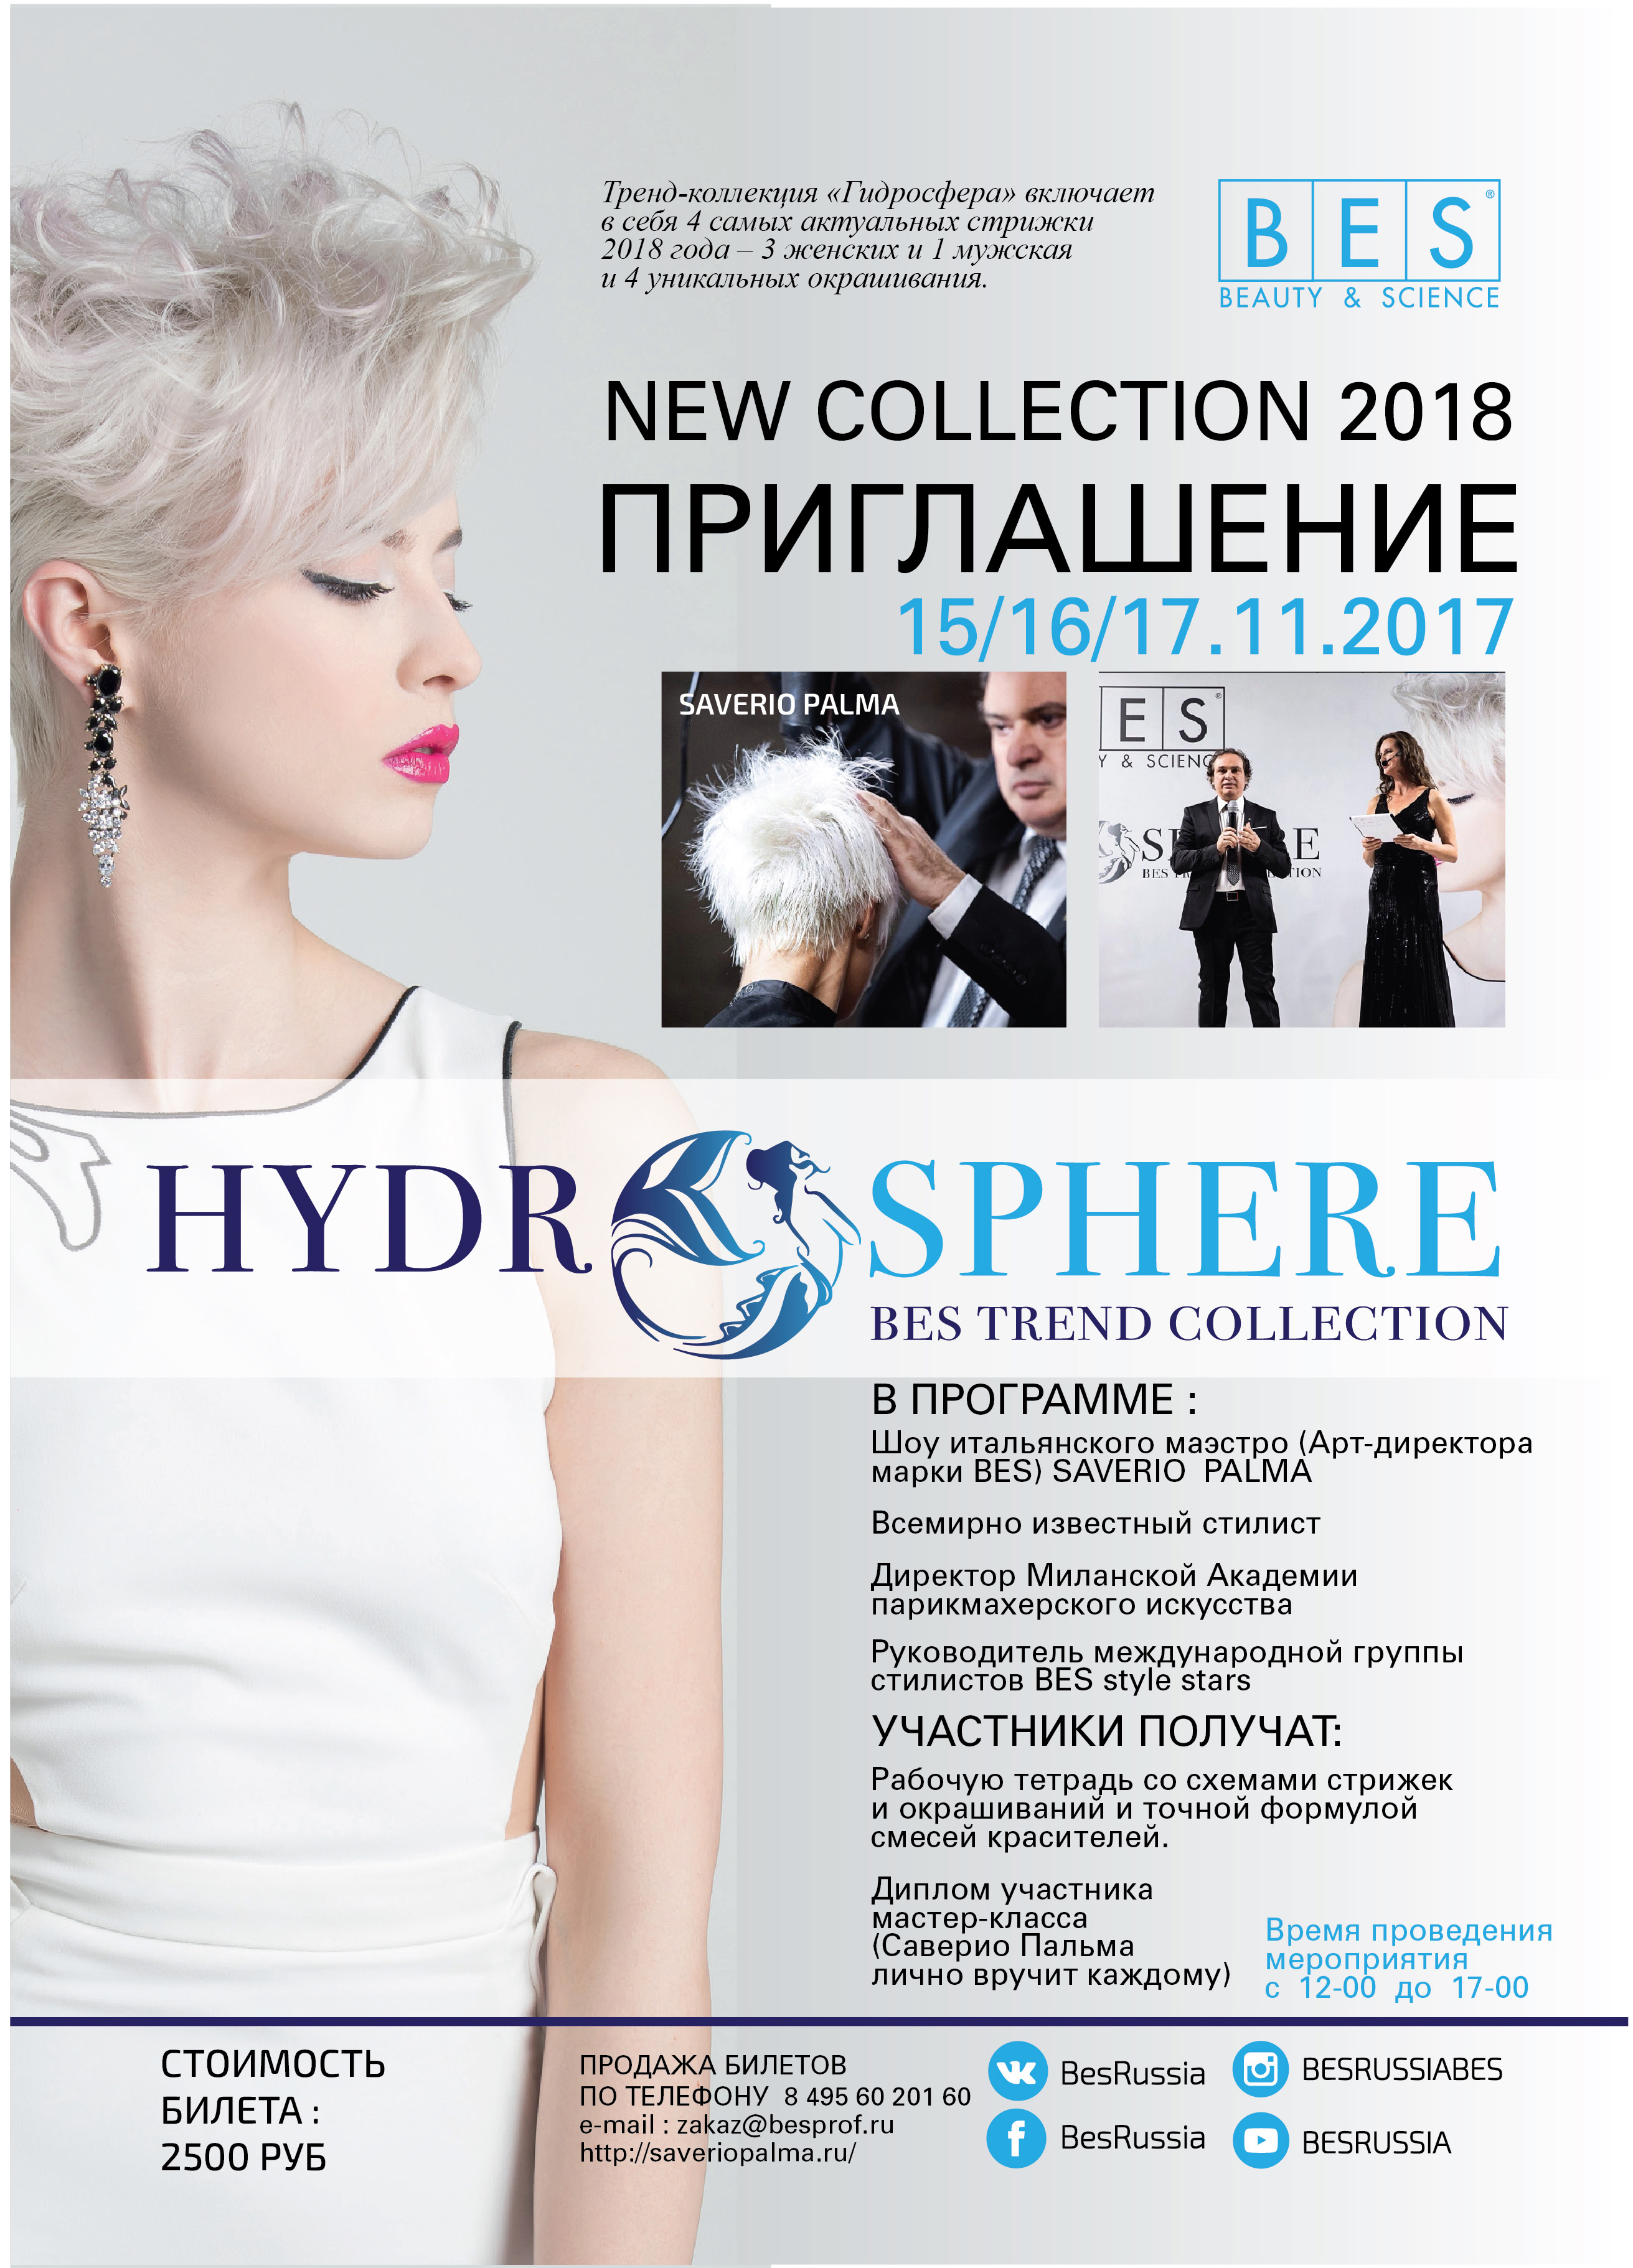 Впервые в России - Новая Коллекция HYDROSPHERE! 15-17 ноября шоу и мастер-класс Саверио Пальма!